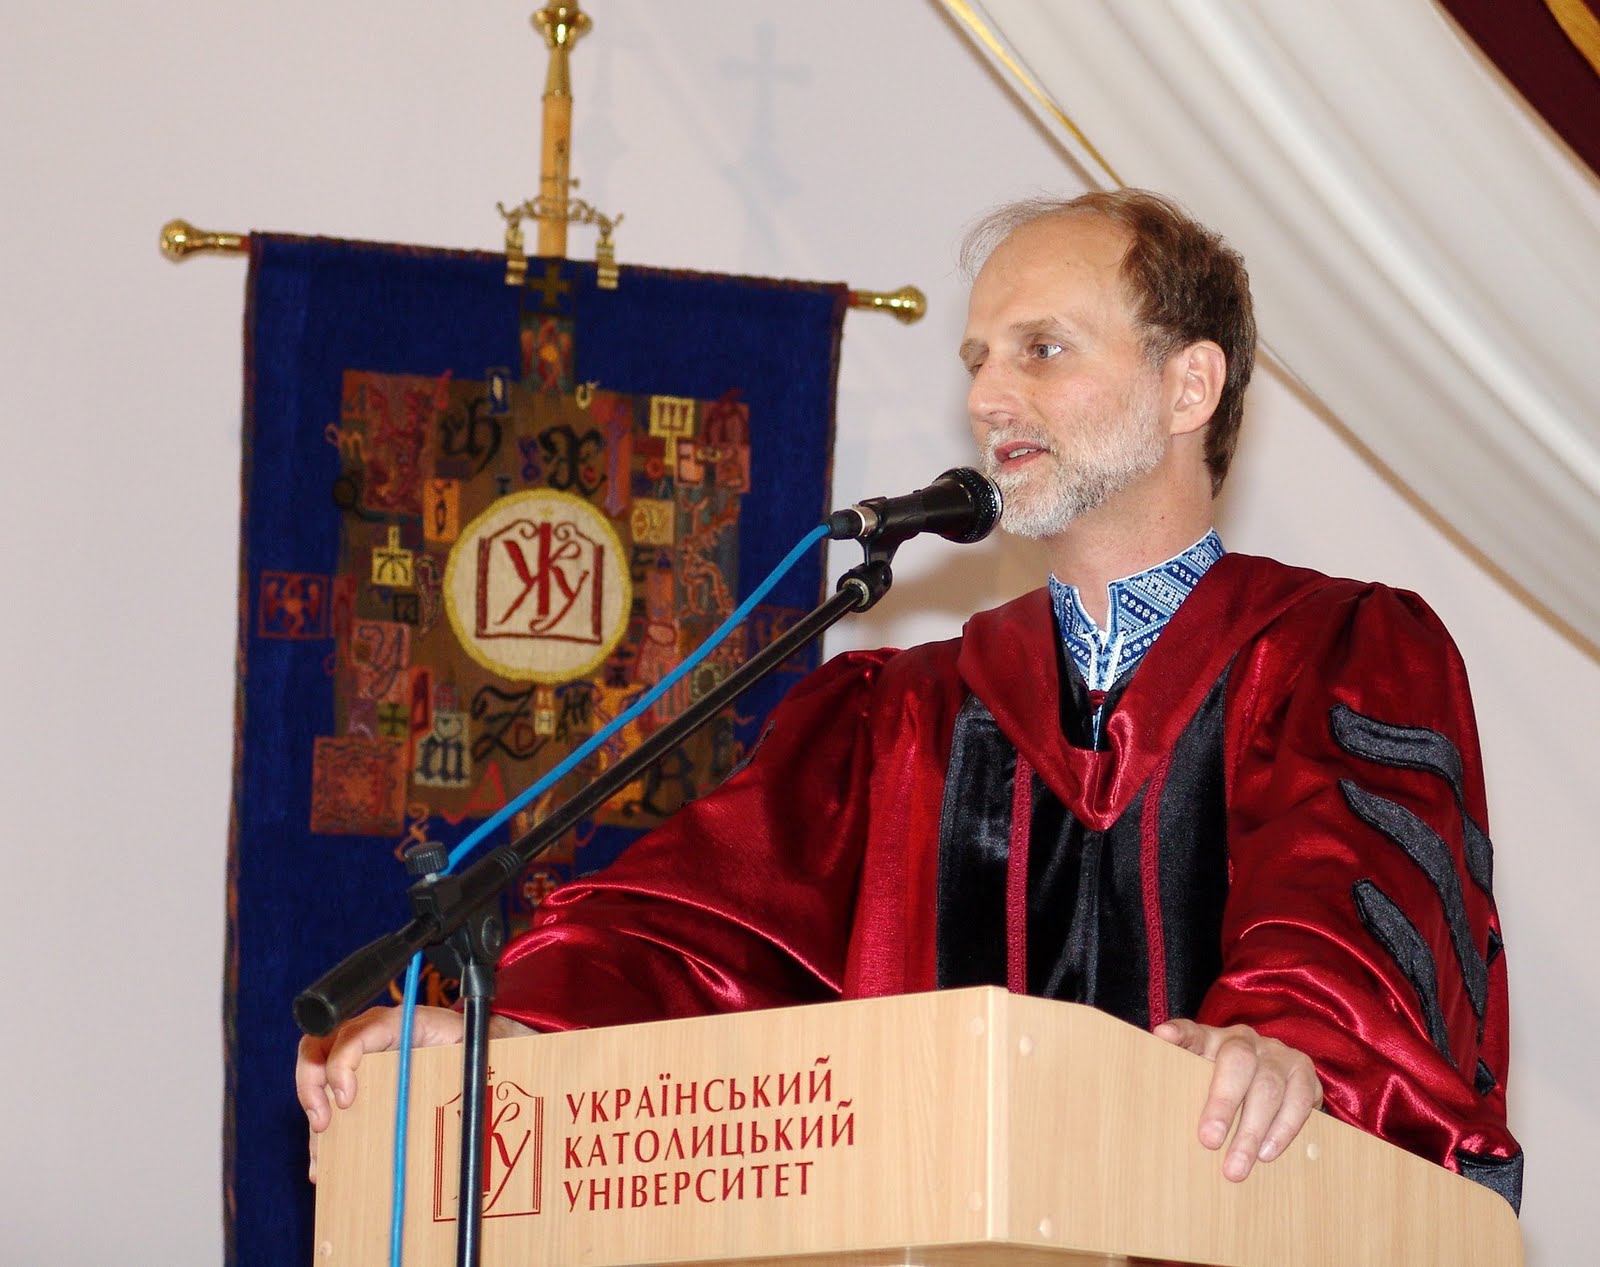 Bishop Borys Gudziak, rector of the Ukrainian Catholic University